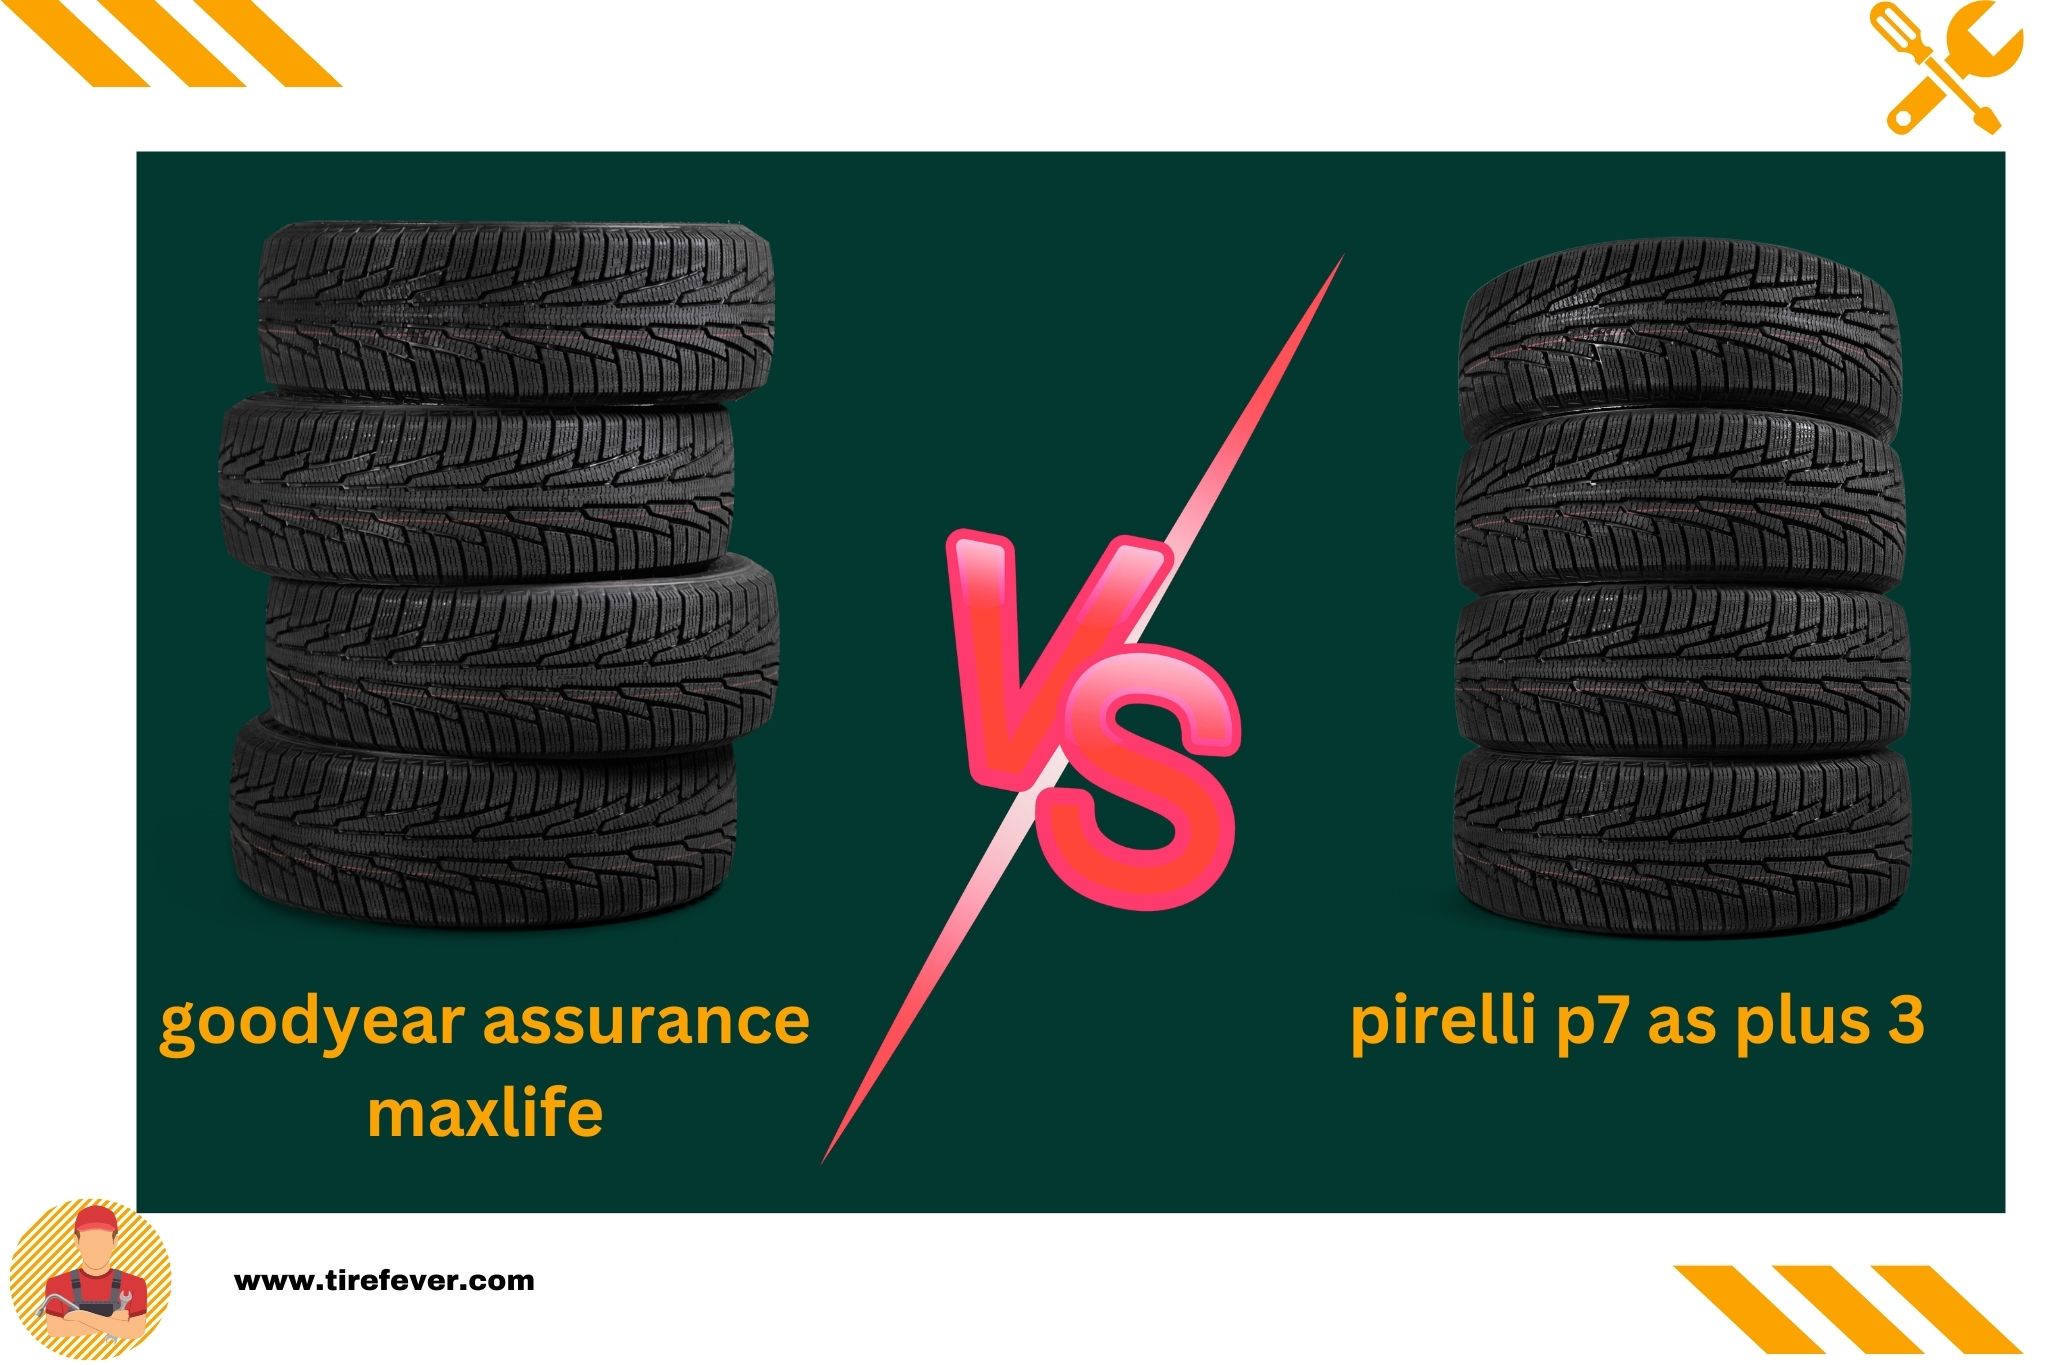 goodyear assurance maxlife vs pirelli p7 as plus 3